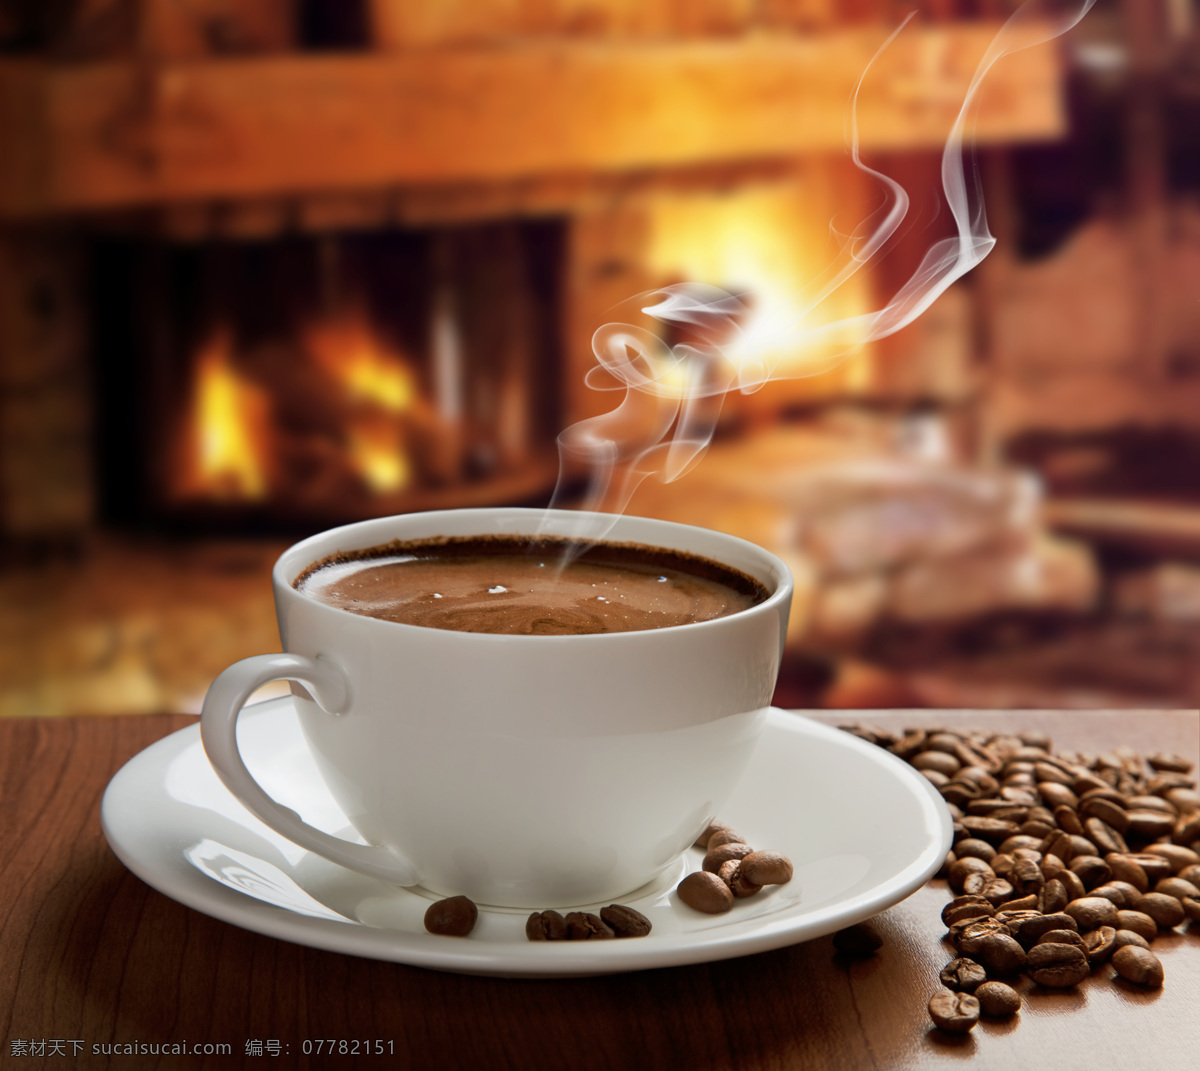 碗 香 浓 咖啡 香浓咖啡 咖啡豆 咖啡杯 休闲饮品 食材原料 健康食品 酒水饮料 咖啡图片 餐饮美食